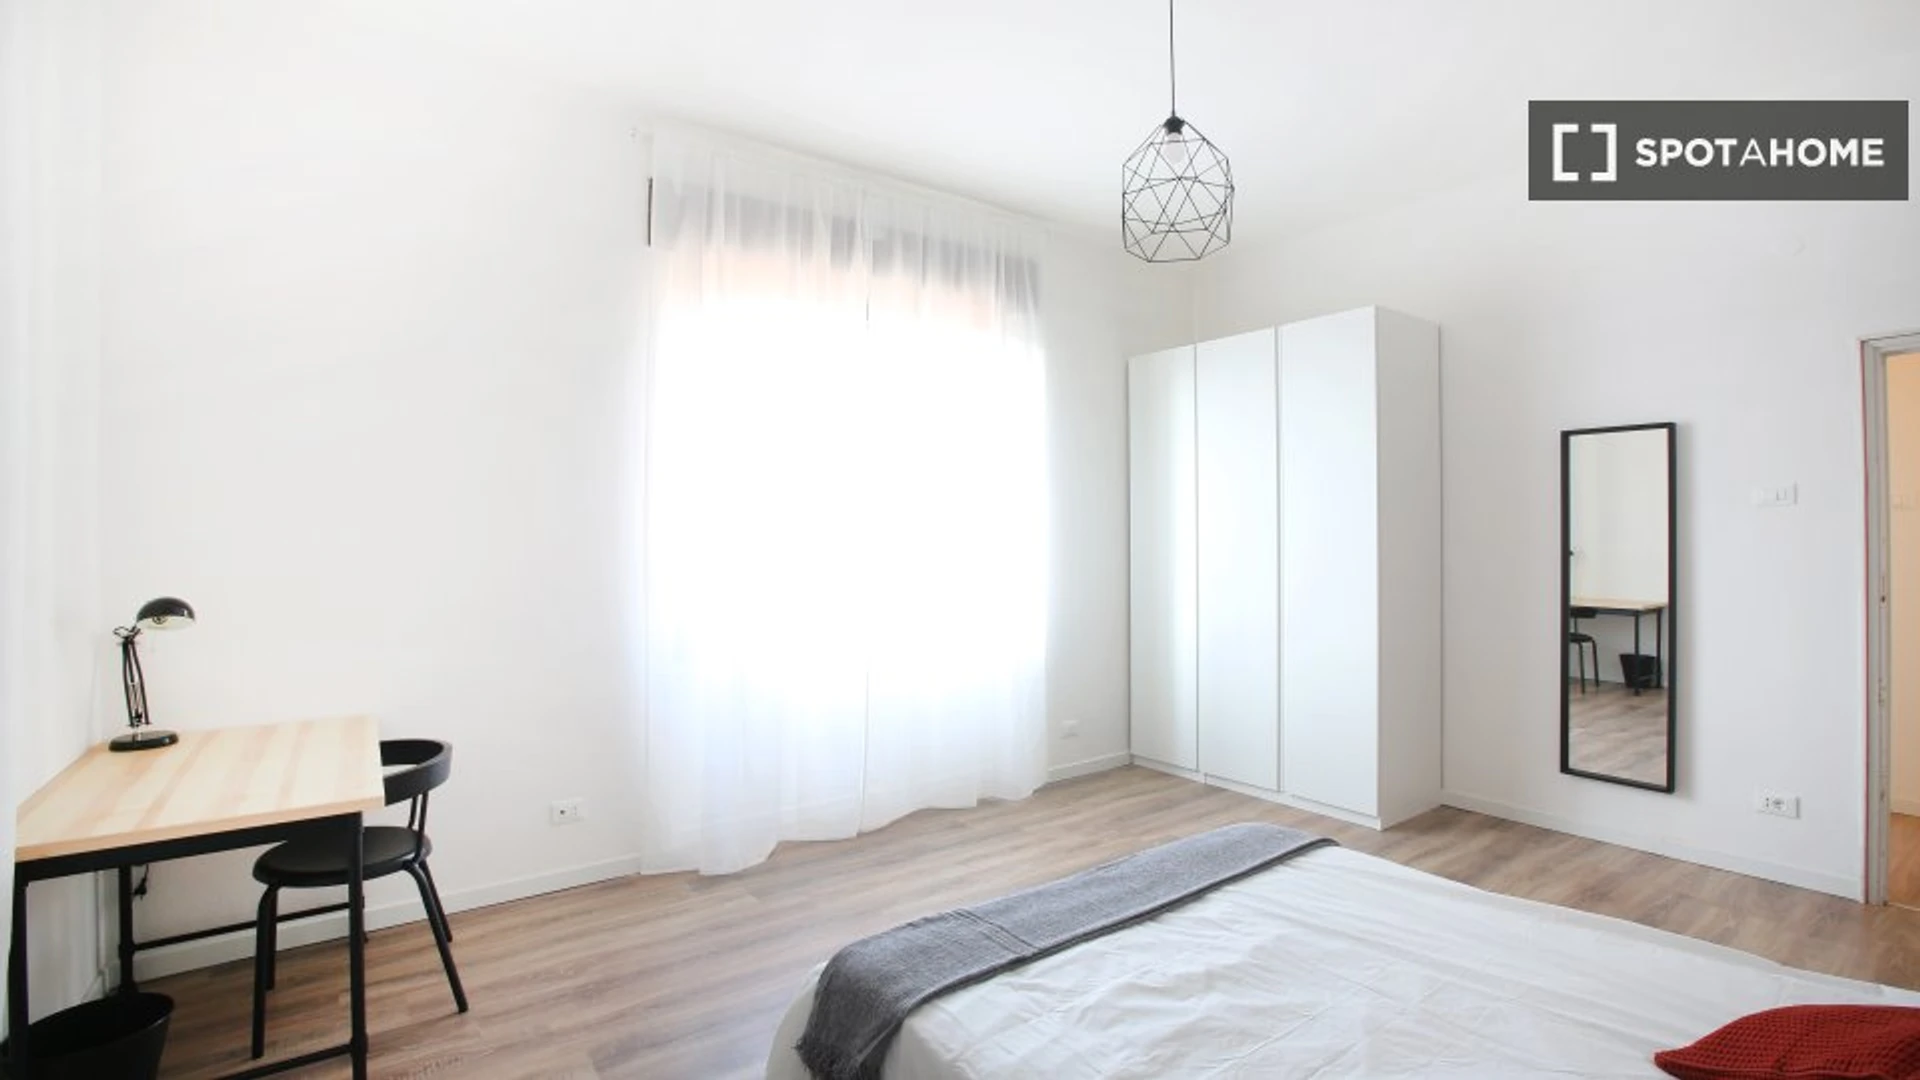 Modena de çift kişilik yataklı kiralık oda